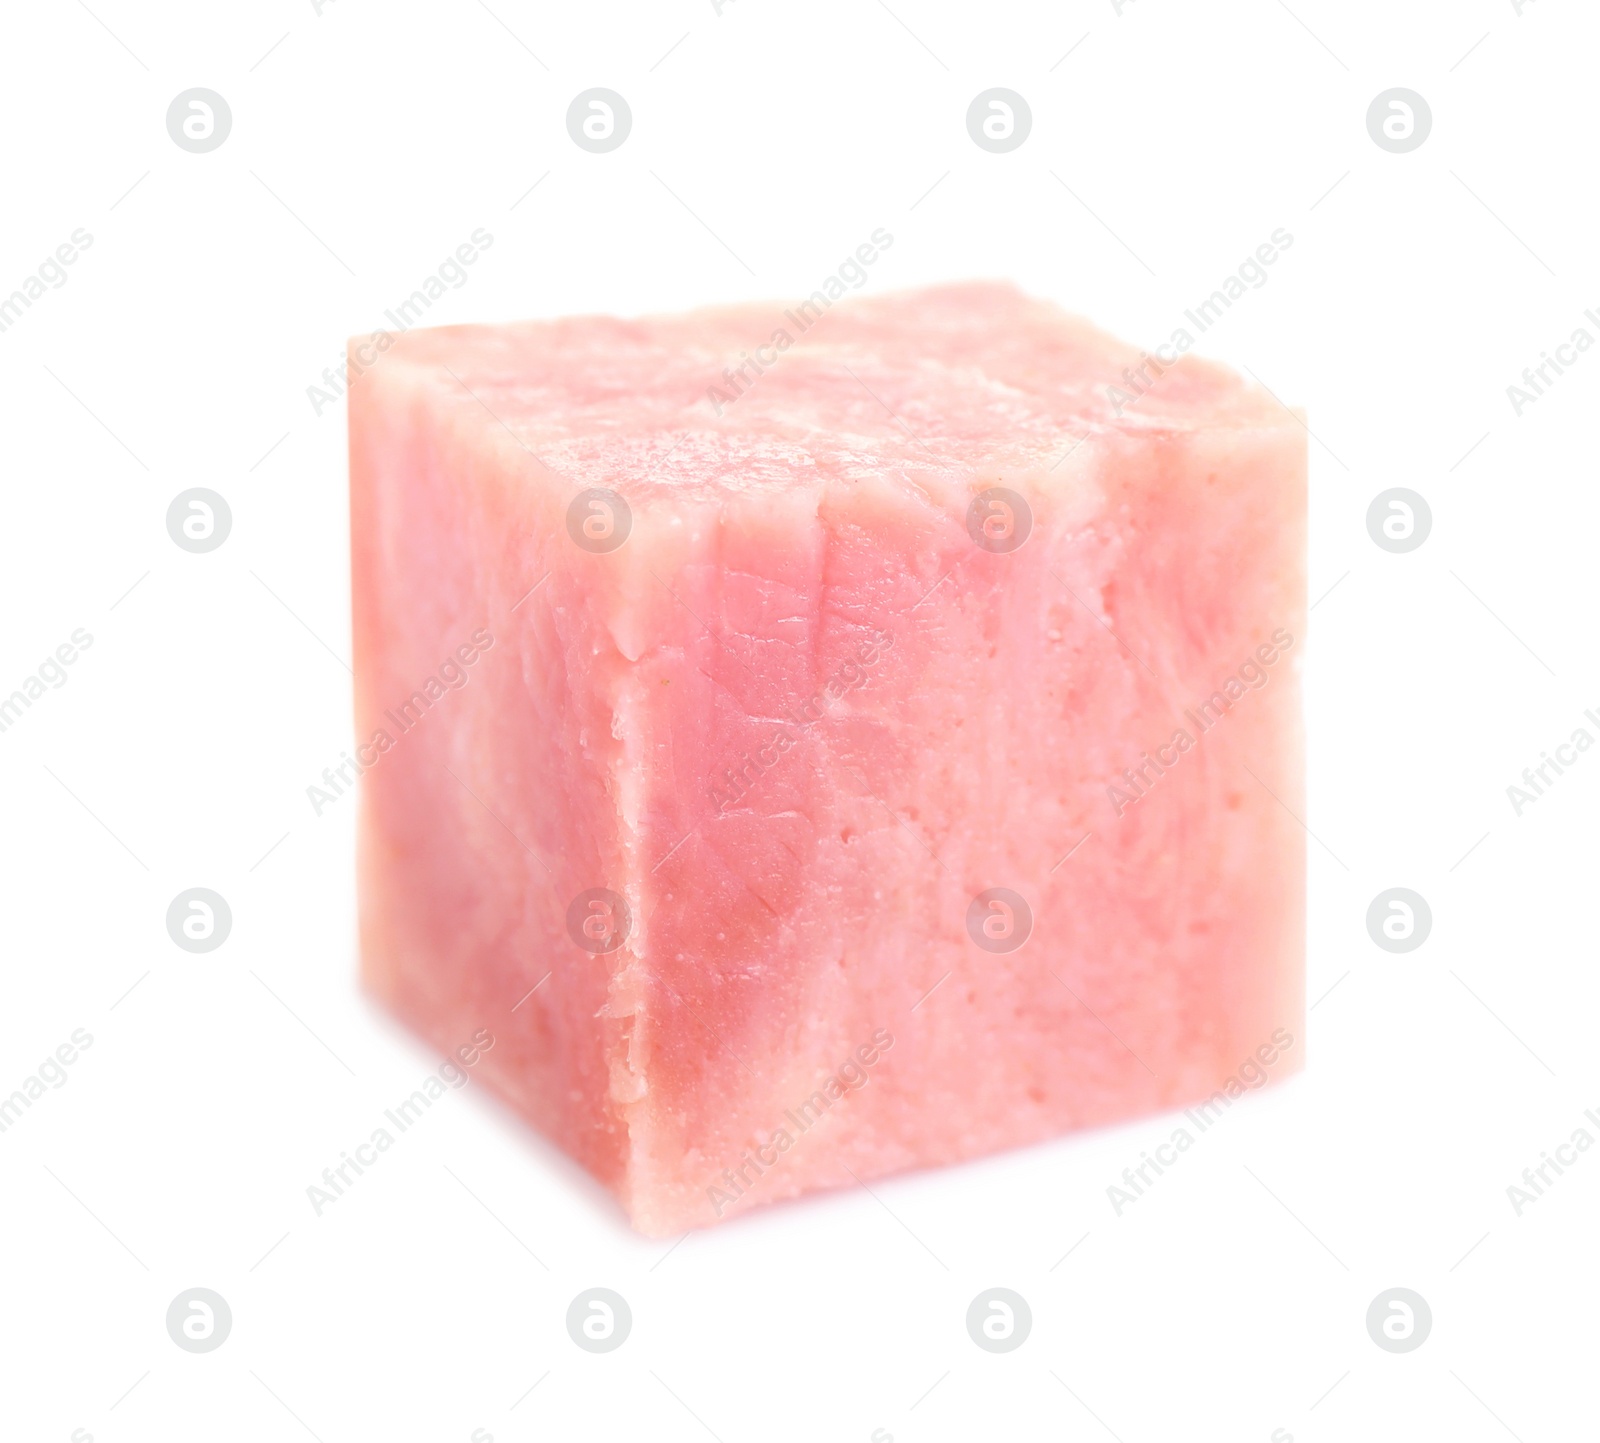 Photo of Cube of tasty fresh ham isolated on white